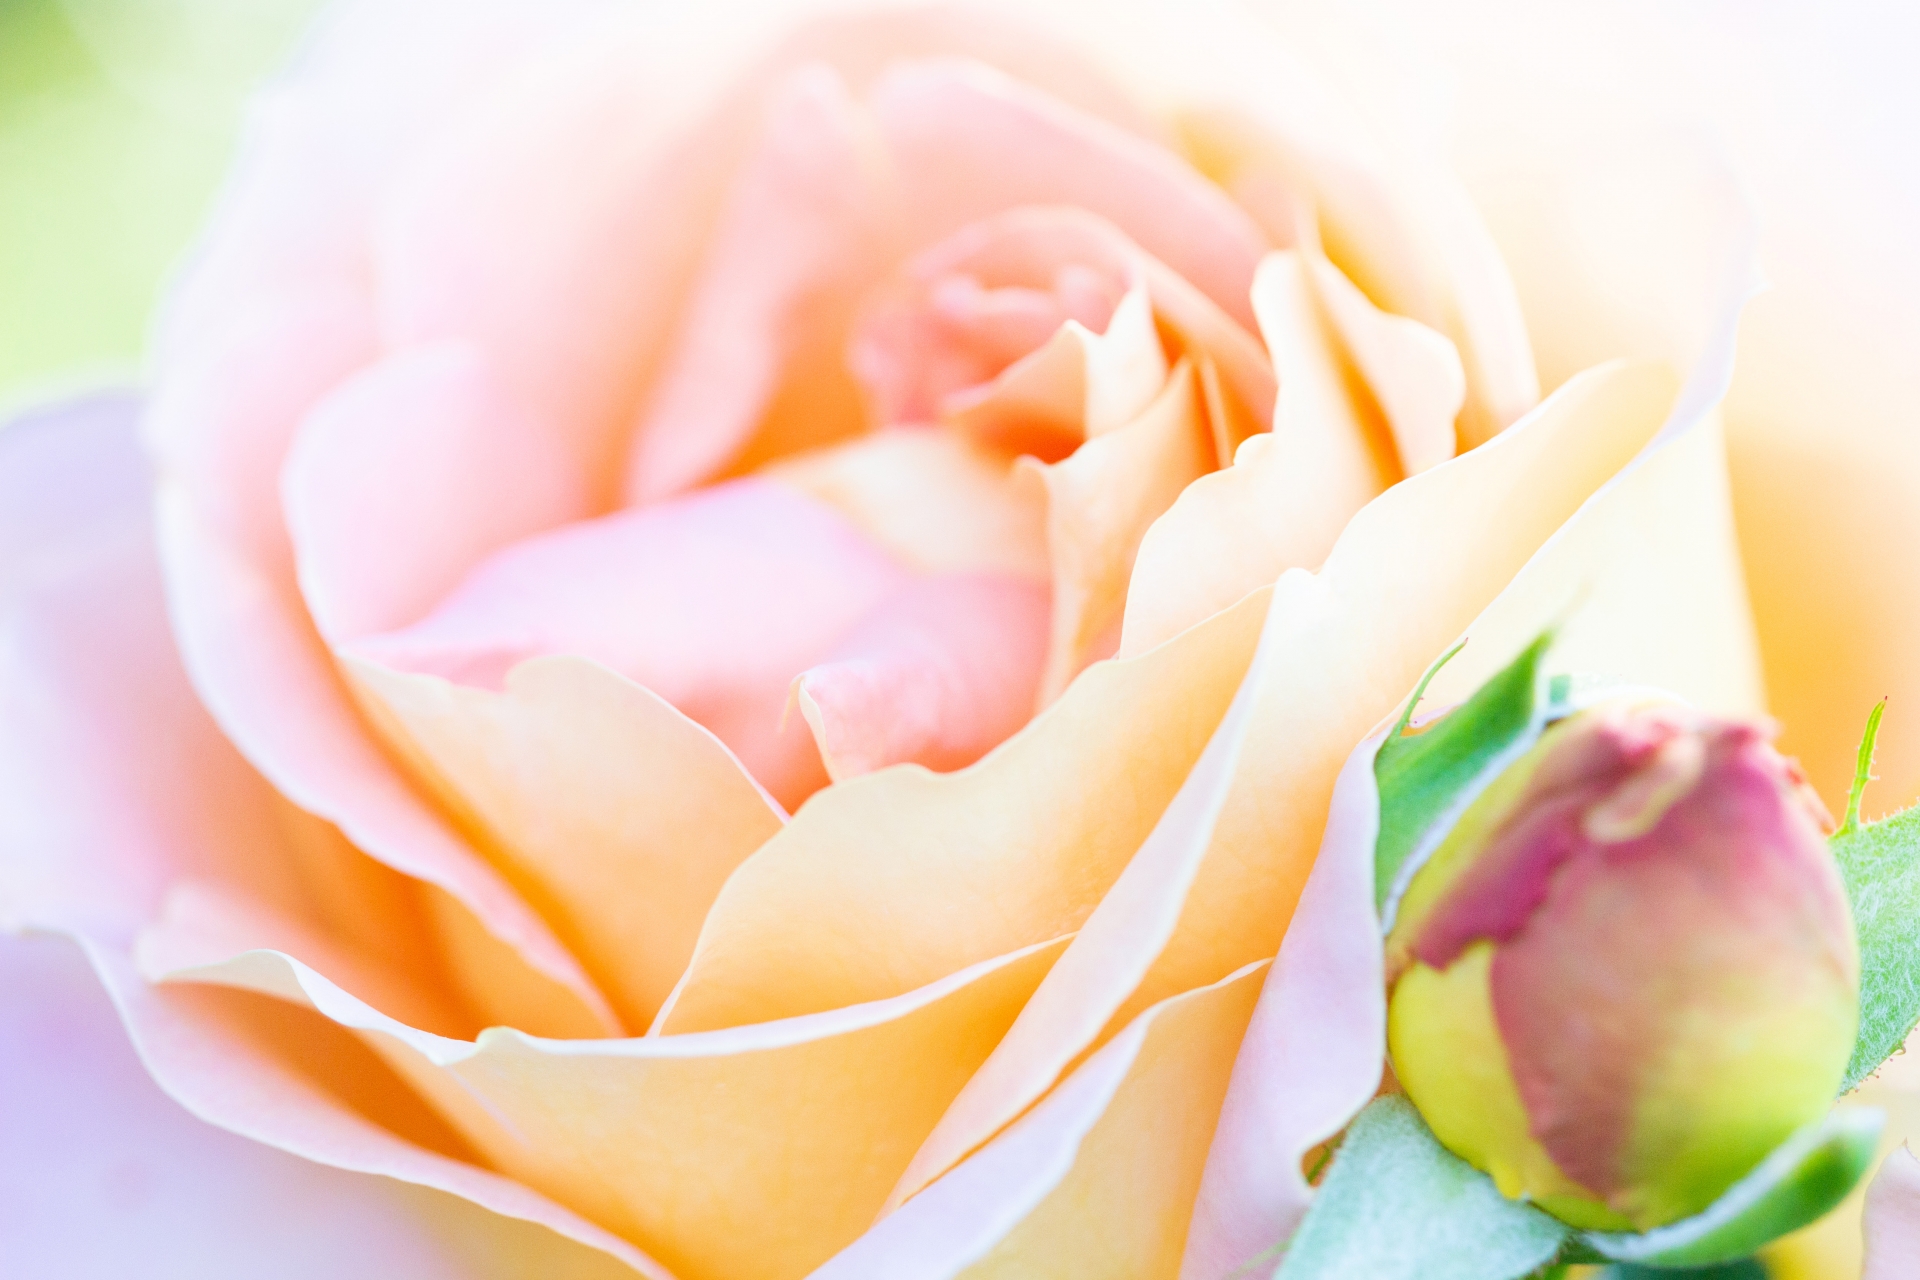 花言葉の意味 バラの花束がピンクの場合の色や本数による違い 生活の緑